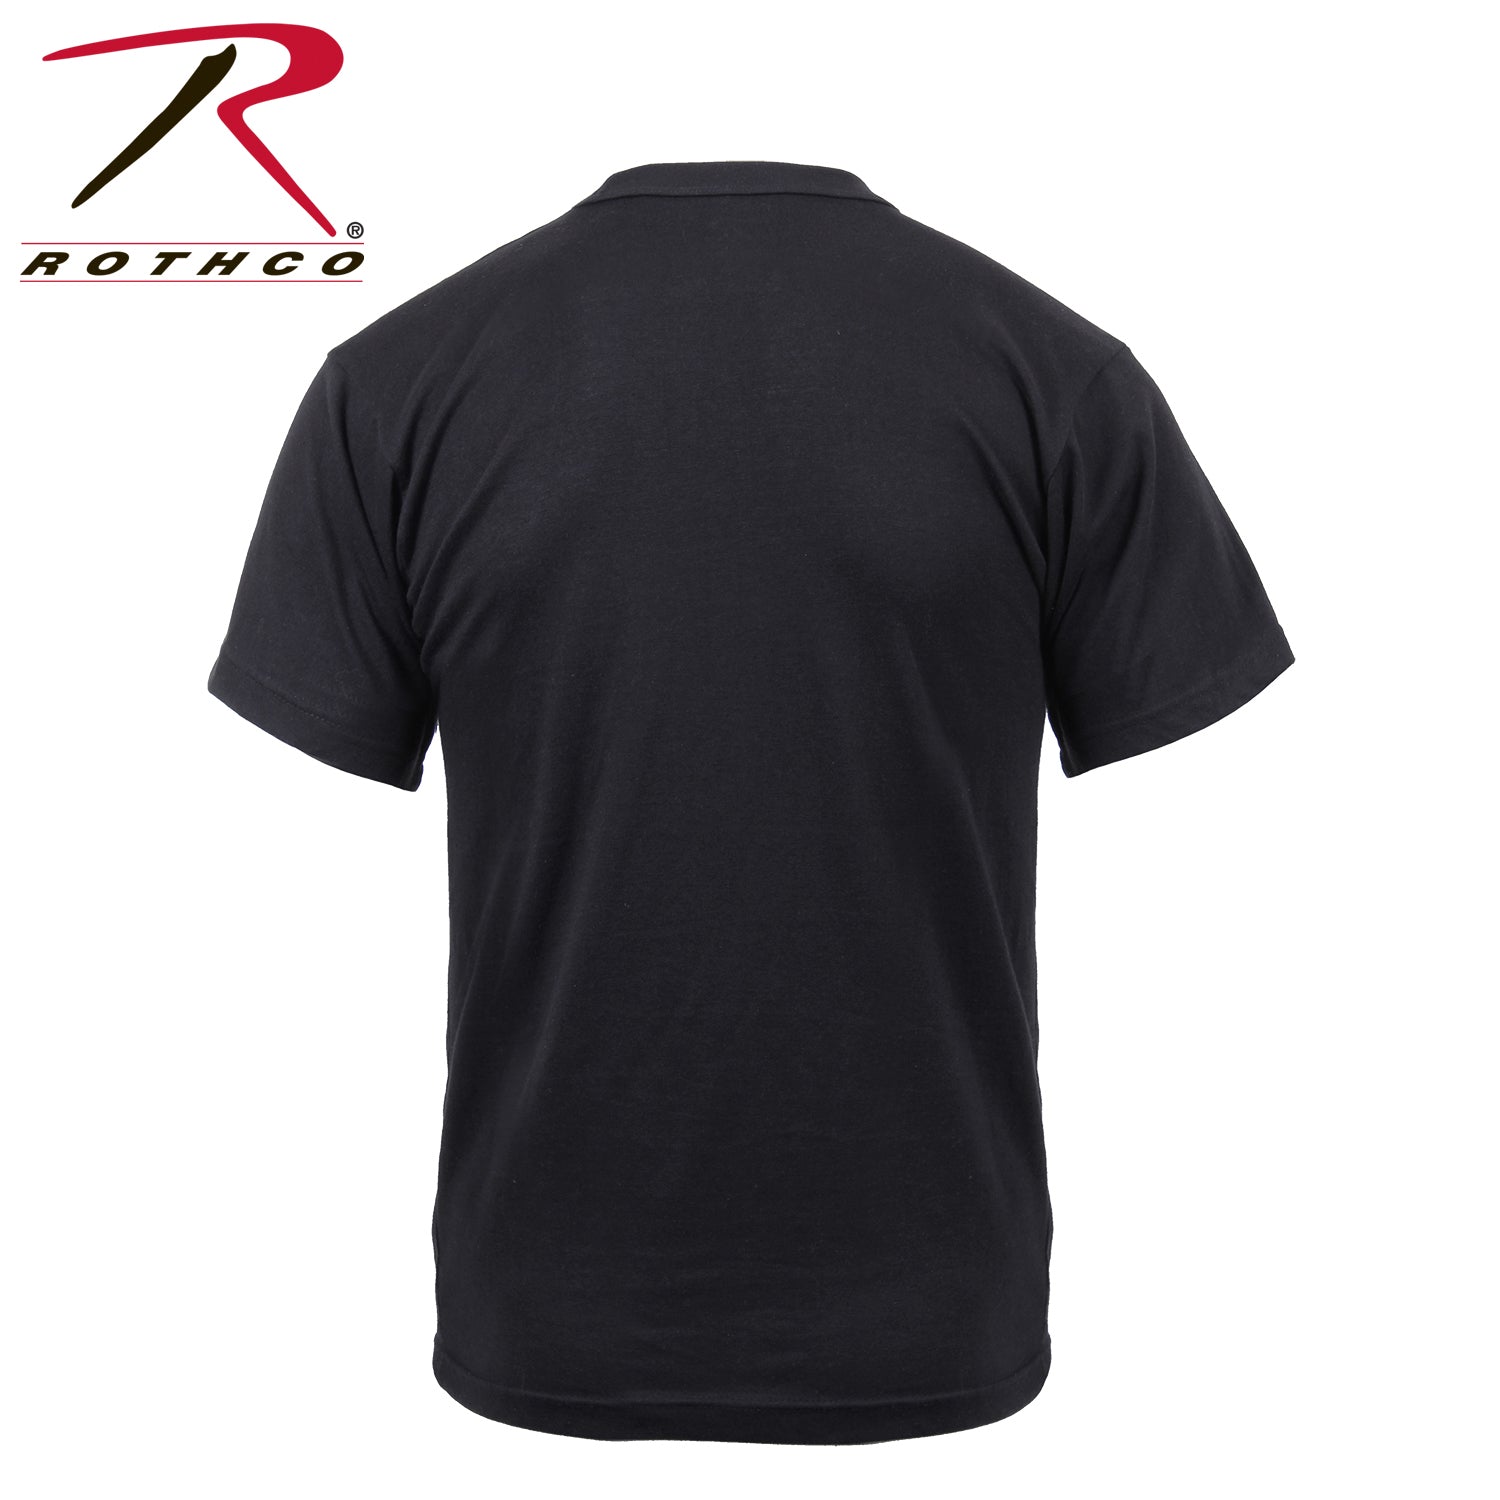 Rothco 1776 T-Shirt